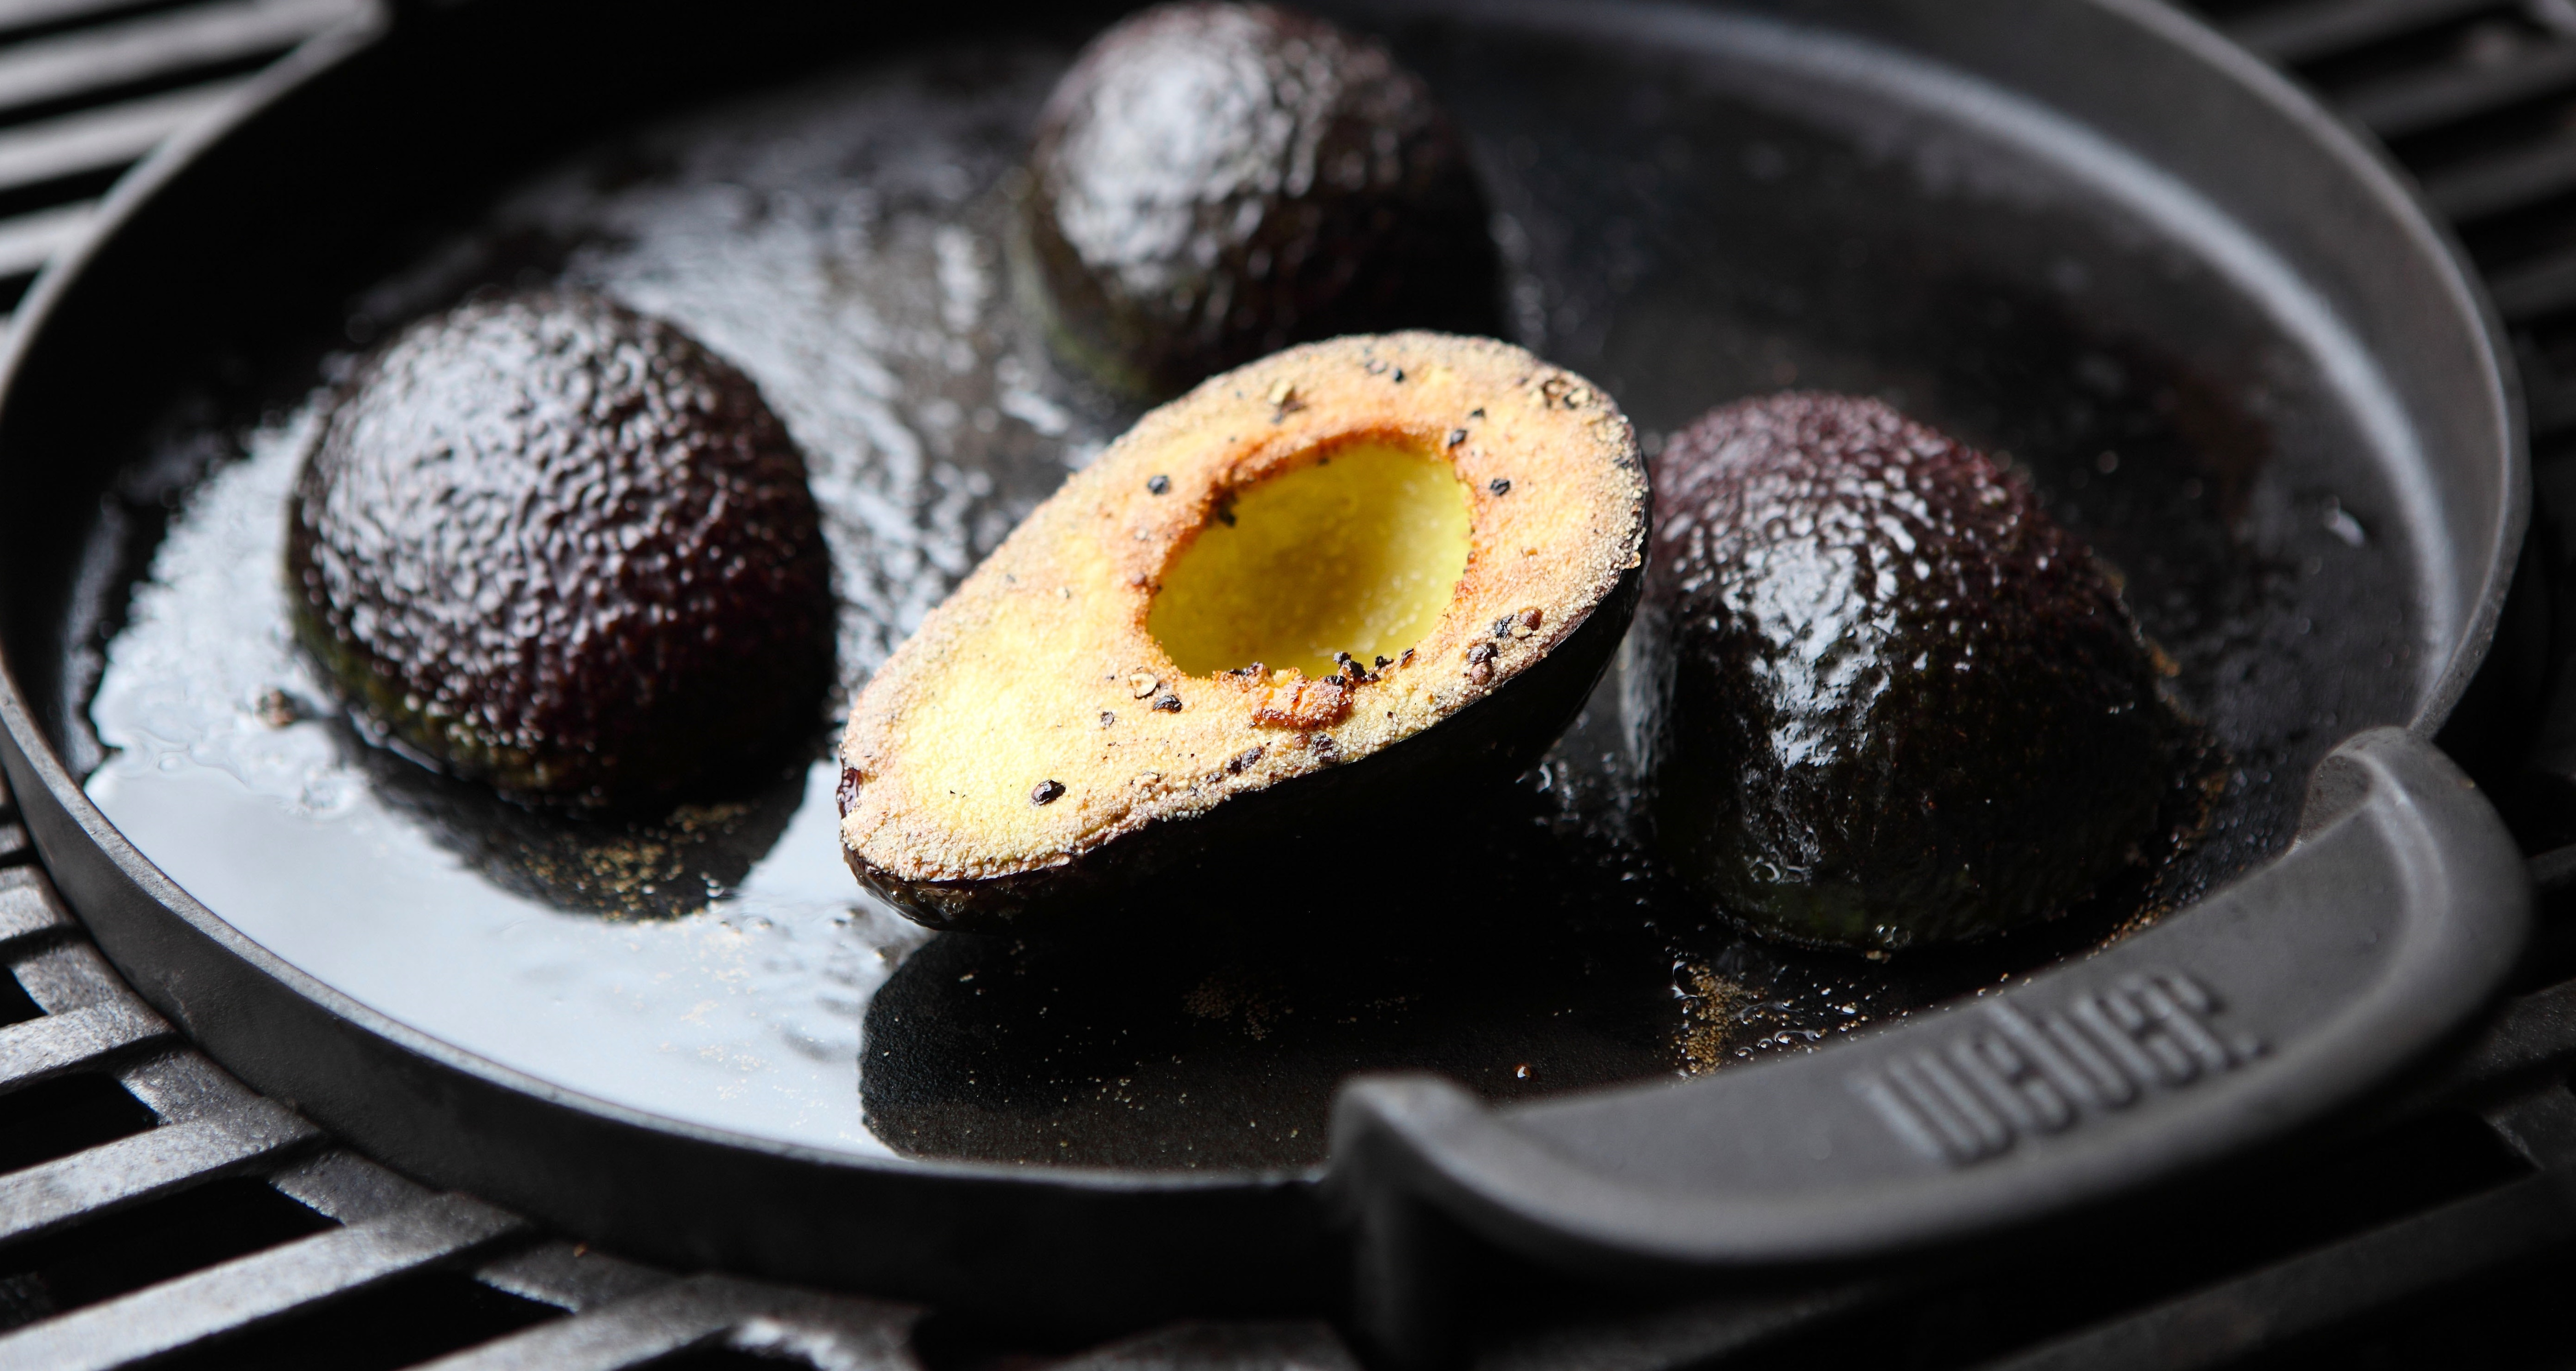  Gegrilde avocado gevuld met ansjovis tapenade en Hollandse garnalen en veldsla


